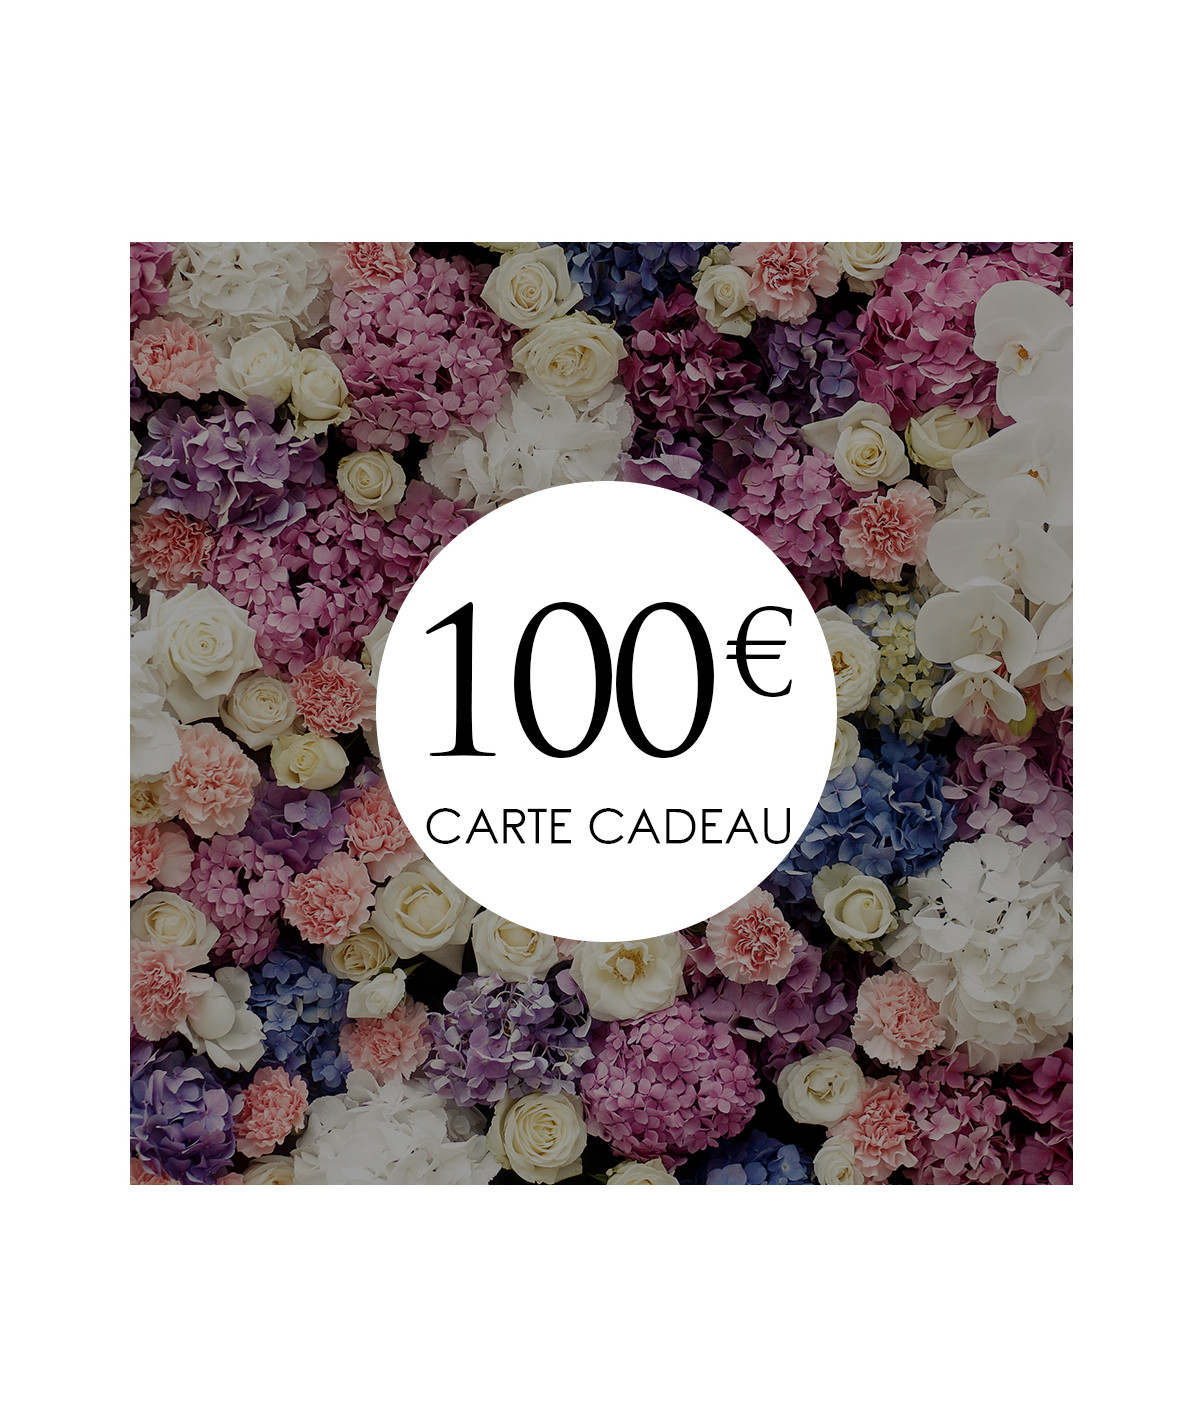 tarjeta regalo 100€ la boutique de lilie ideas regalo